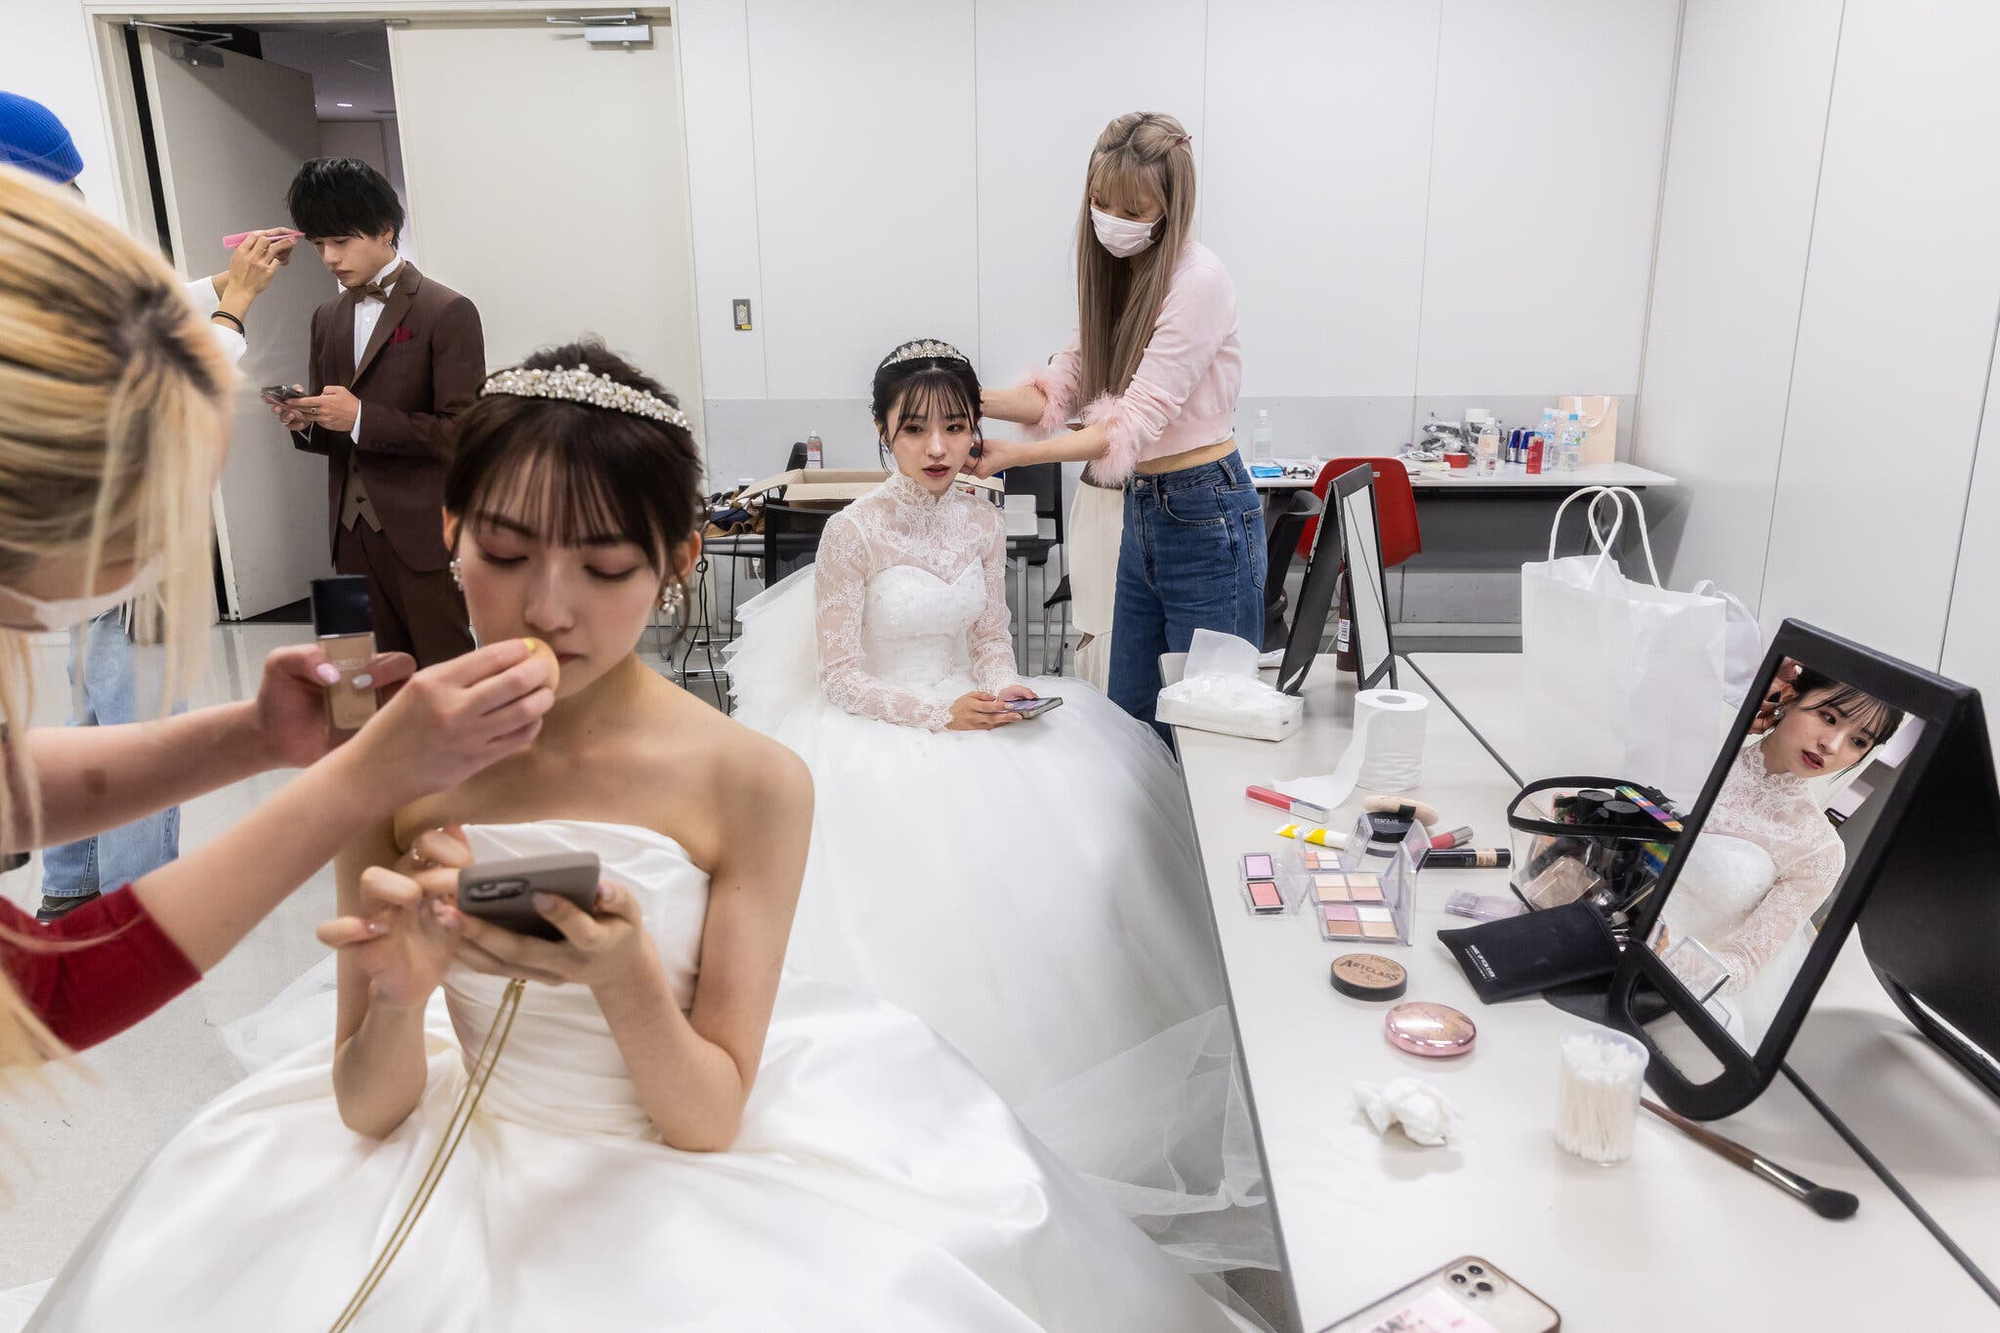 Nhức nhối tìm ‘bình hoa di động’ đội lốt thi hoa khôi ở Nhật: Công ty người mẫu 'sướng' vì tiện, thí sinh 'khóc ròng' vì ăn kiêng - Ảnh 1.